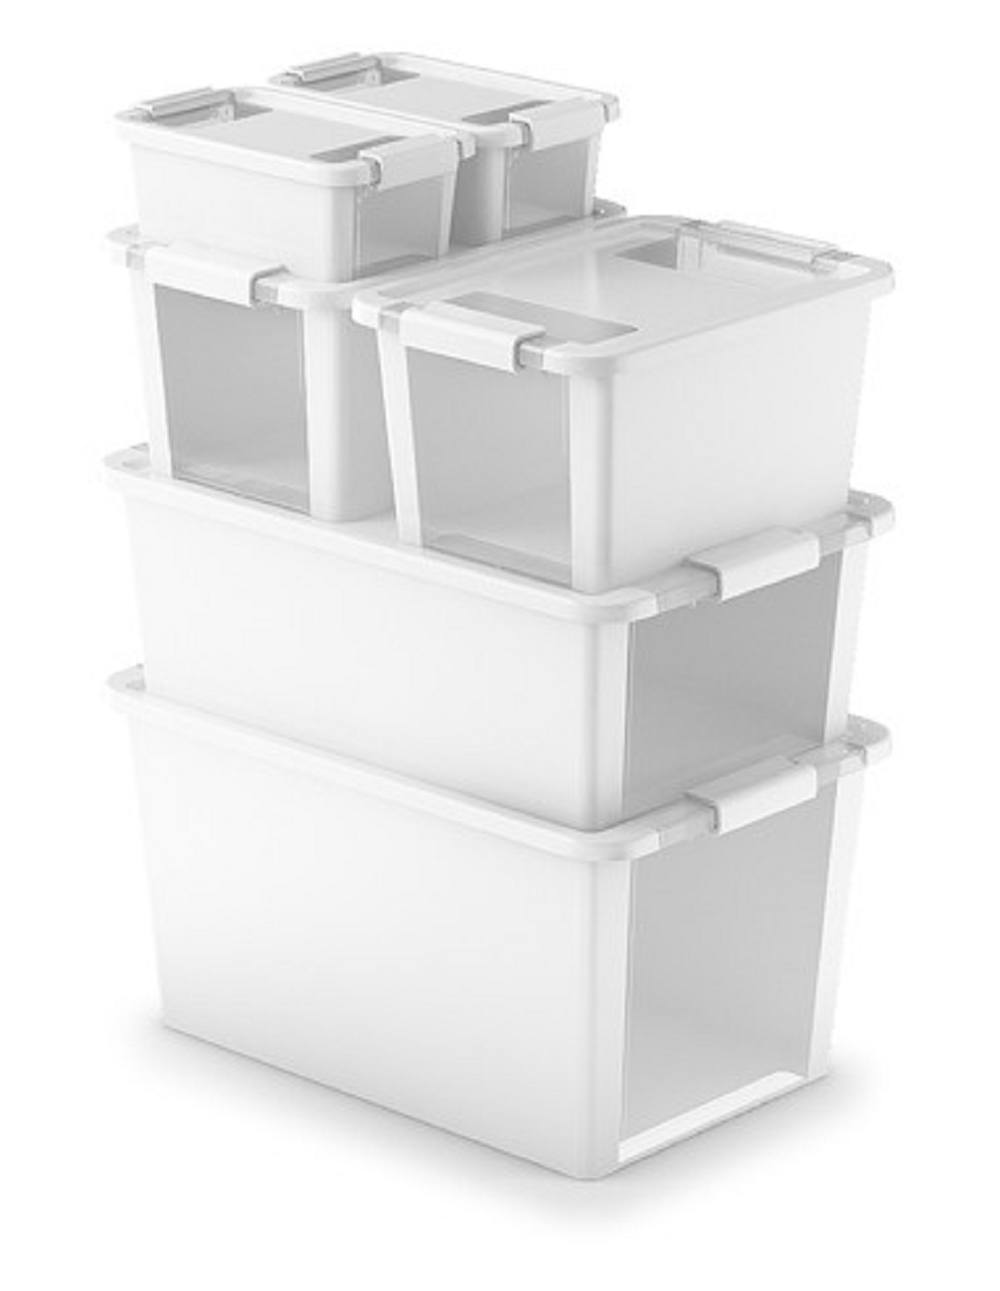 Mehrzweck Aufbewahrungsbehälter STORAGE mit Deckel | HxBxT 28x55x35cm | 40 Liter | Türkis | Behälter, Box, Aufbewahrungsbehälter, Aufbewahrungsbox